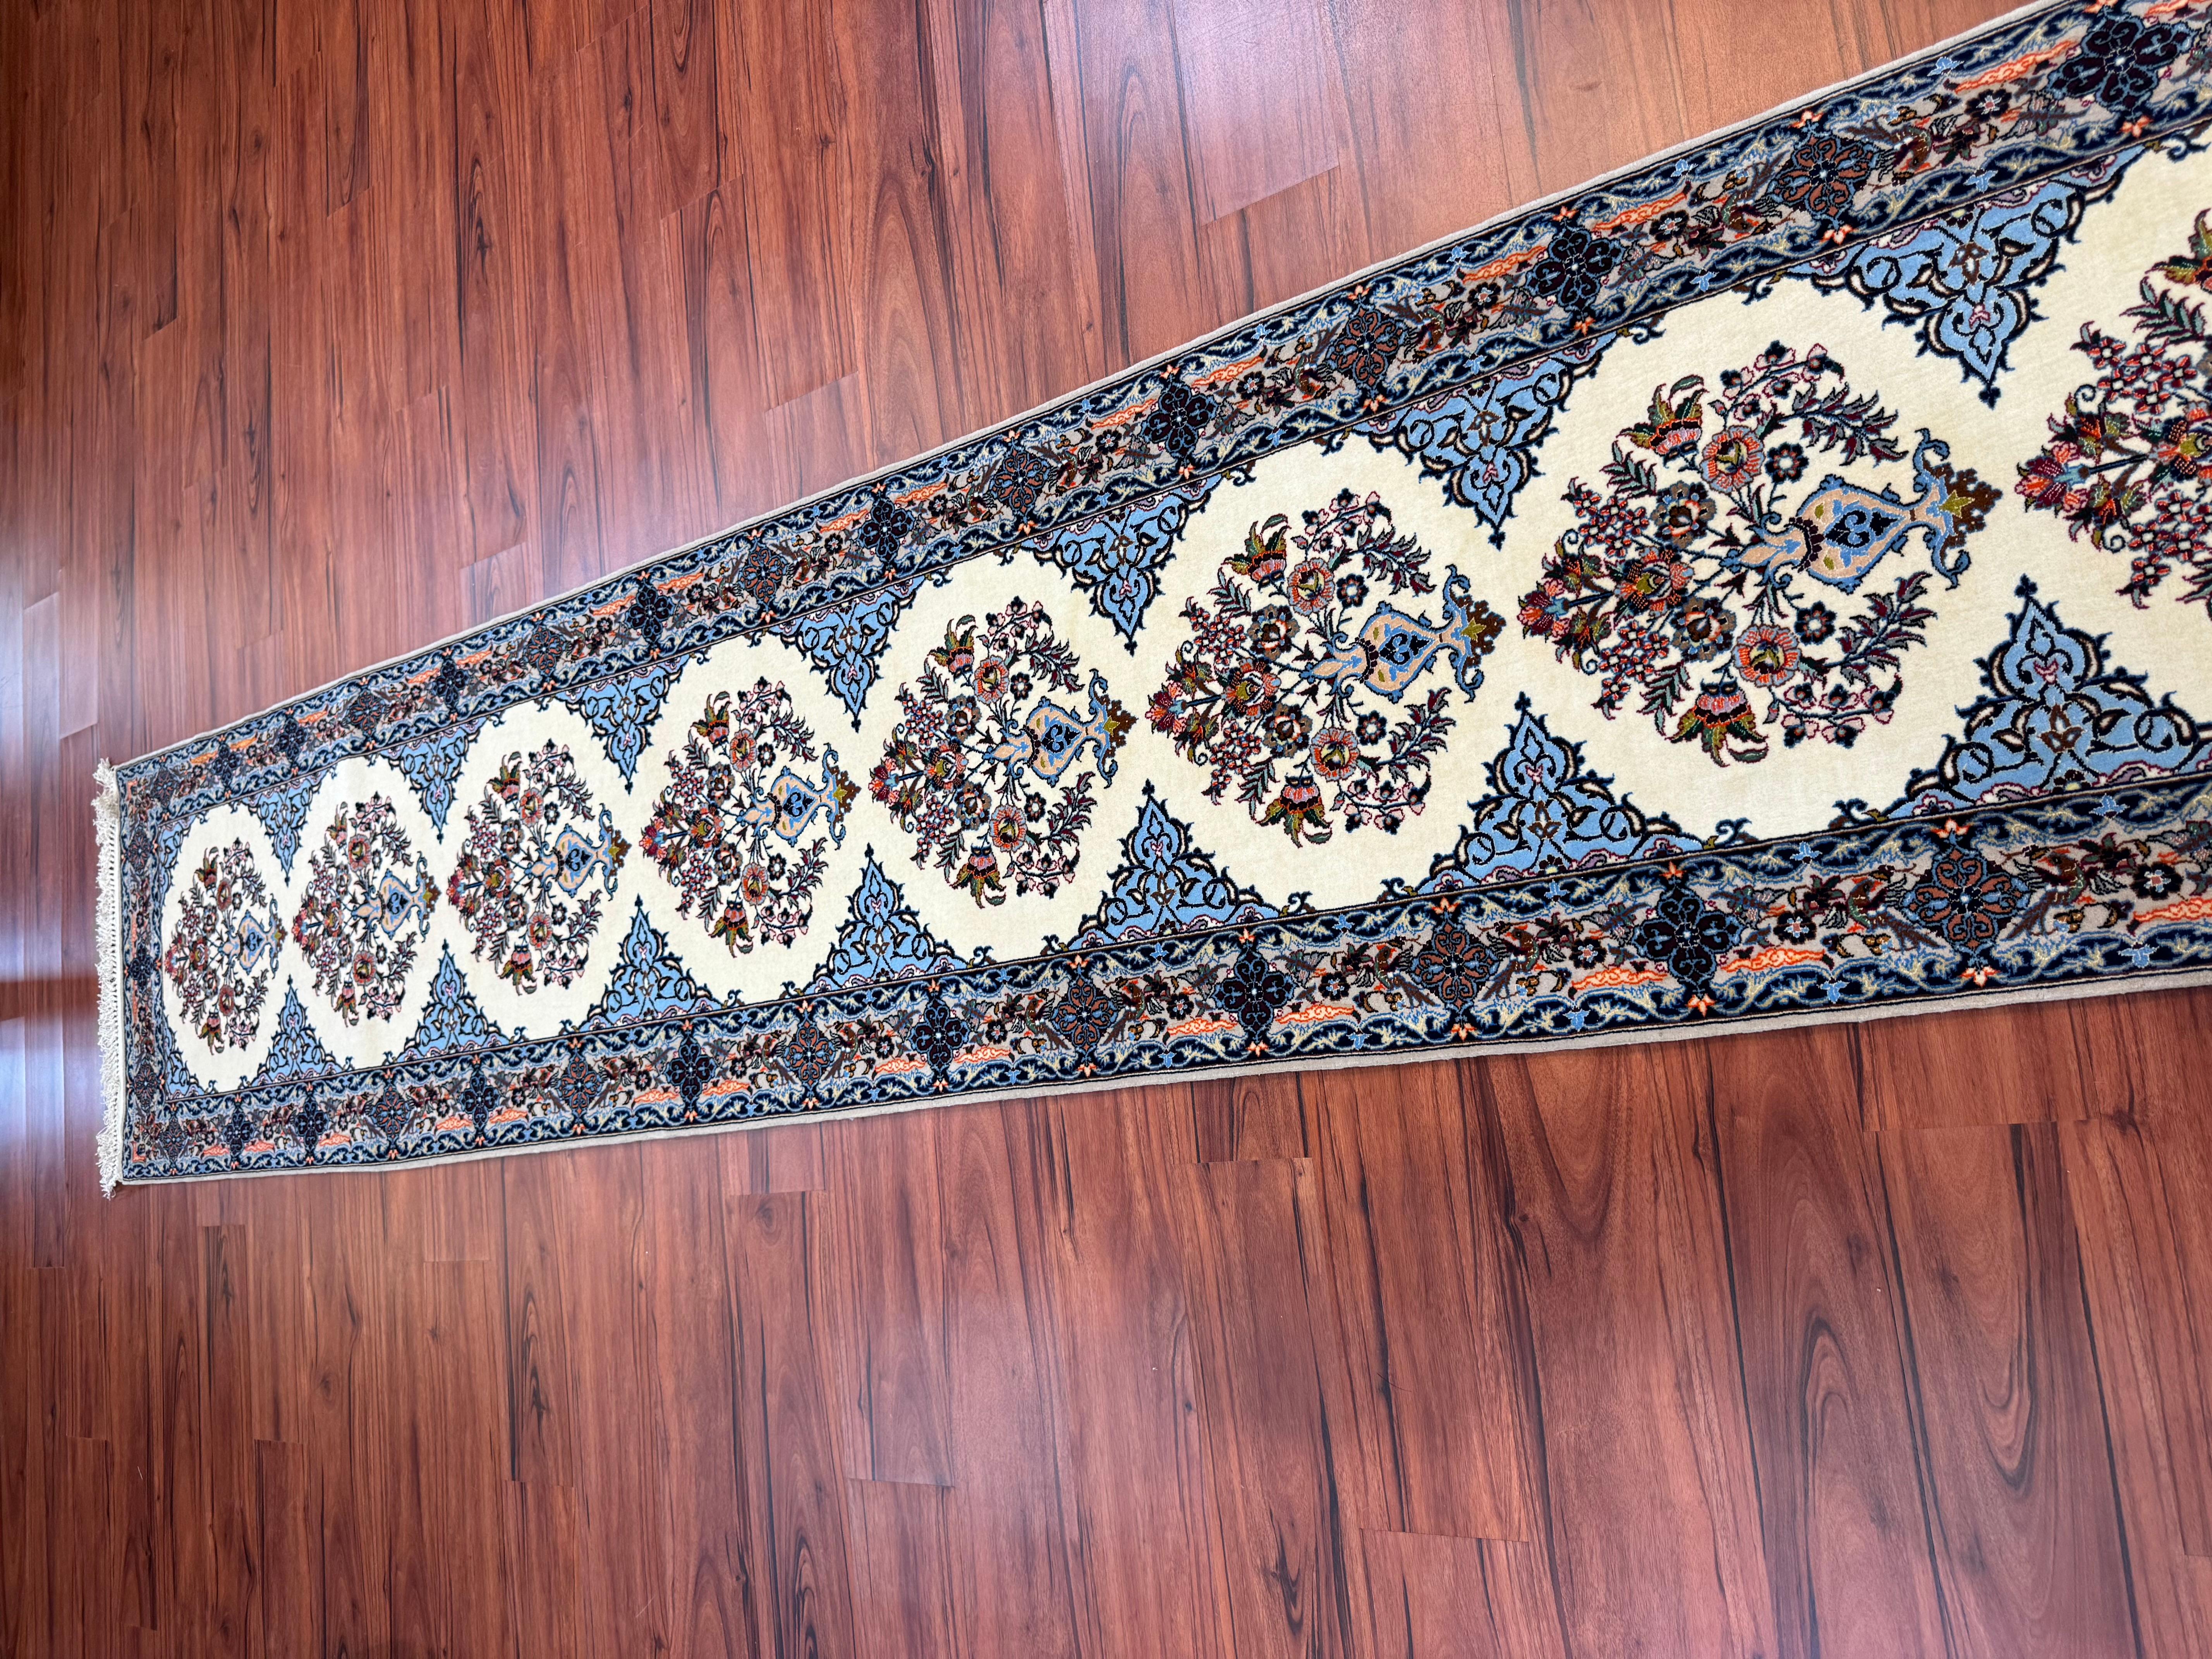 Un superbe tapis de course persan Isfahan, originaire d'Iran à la fin du 20e siècle. Ce tapis est en excellent état et présente de magnifiques couleurs bleues sur l'ensemble du tapis. N'hésitez pas à m'envoyer un message concernant cette annonce ou